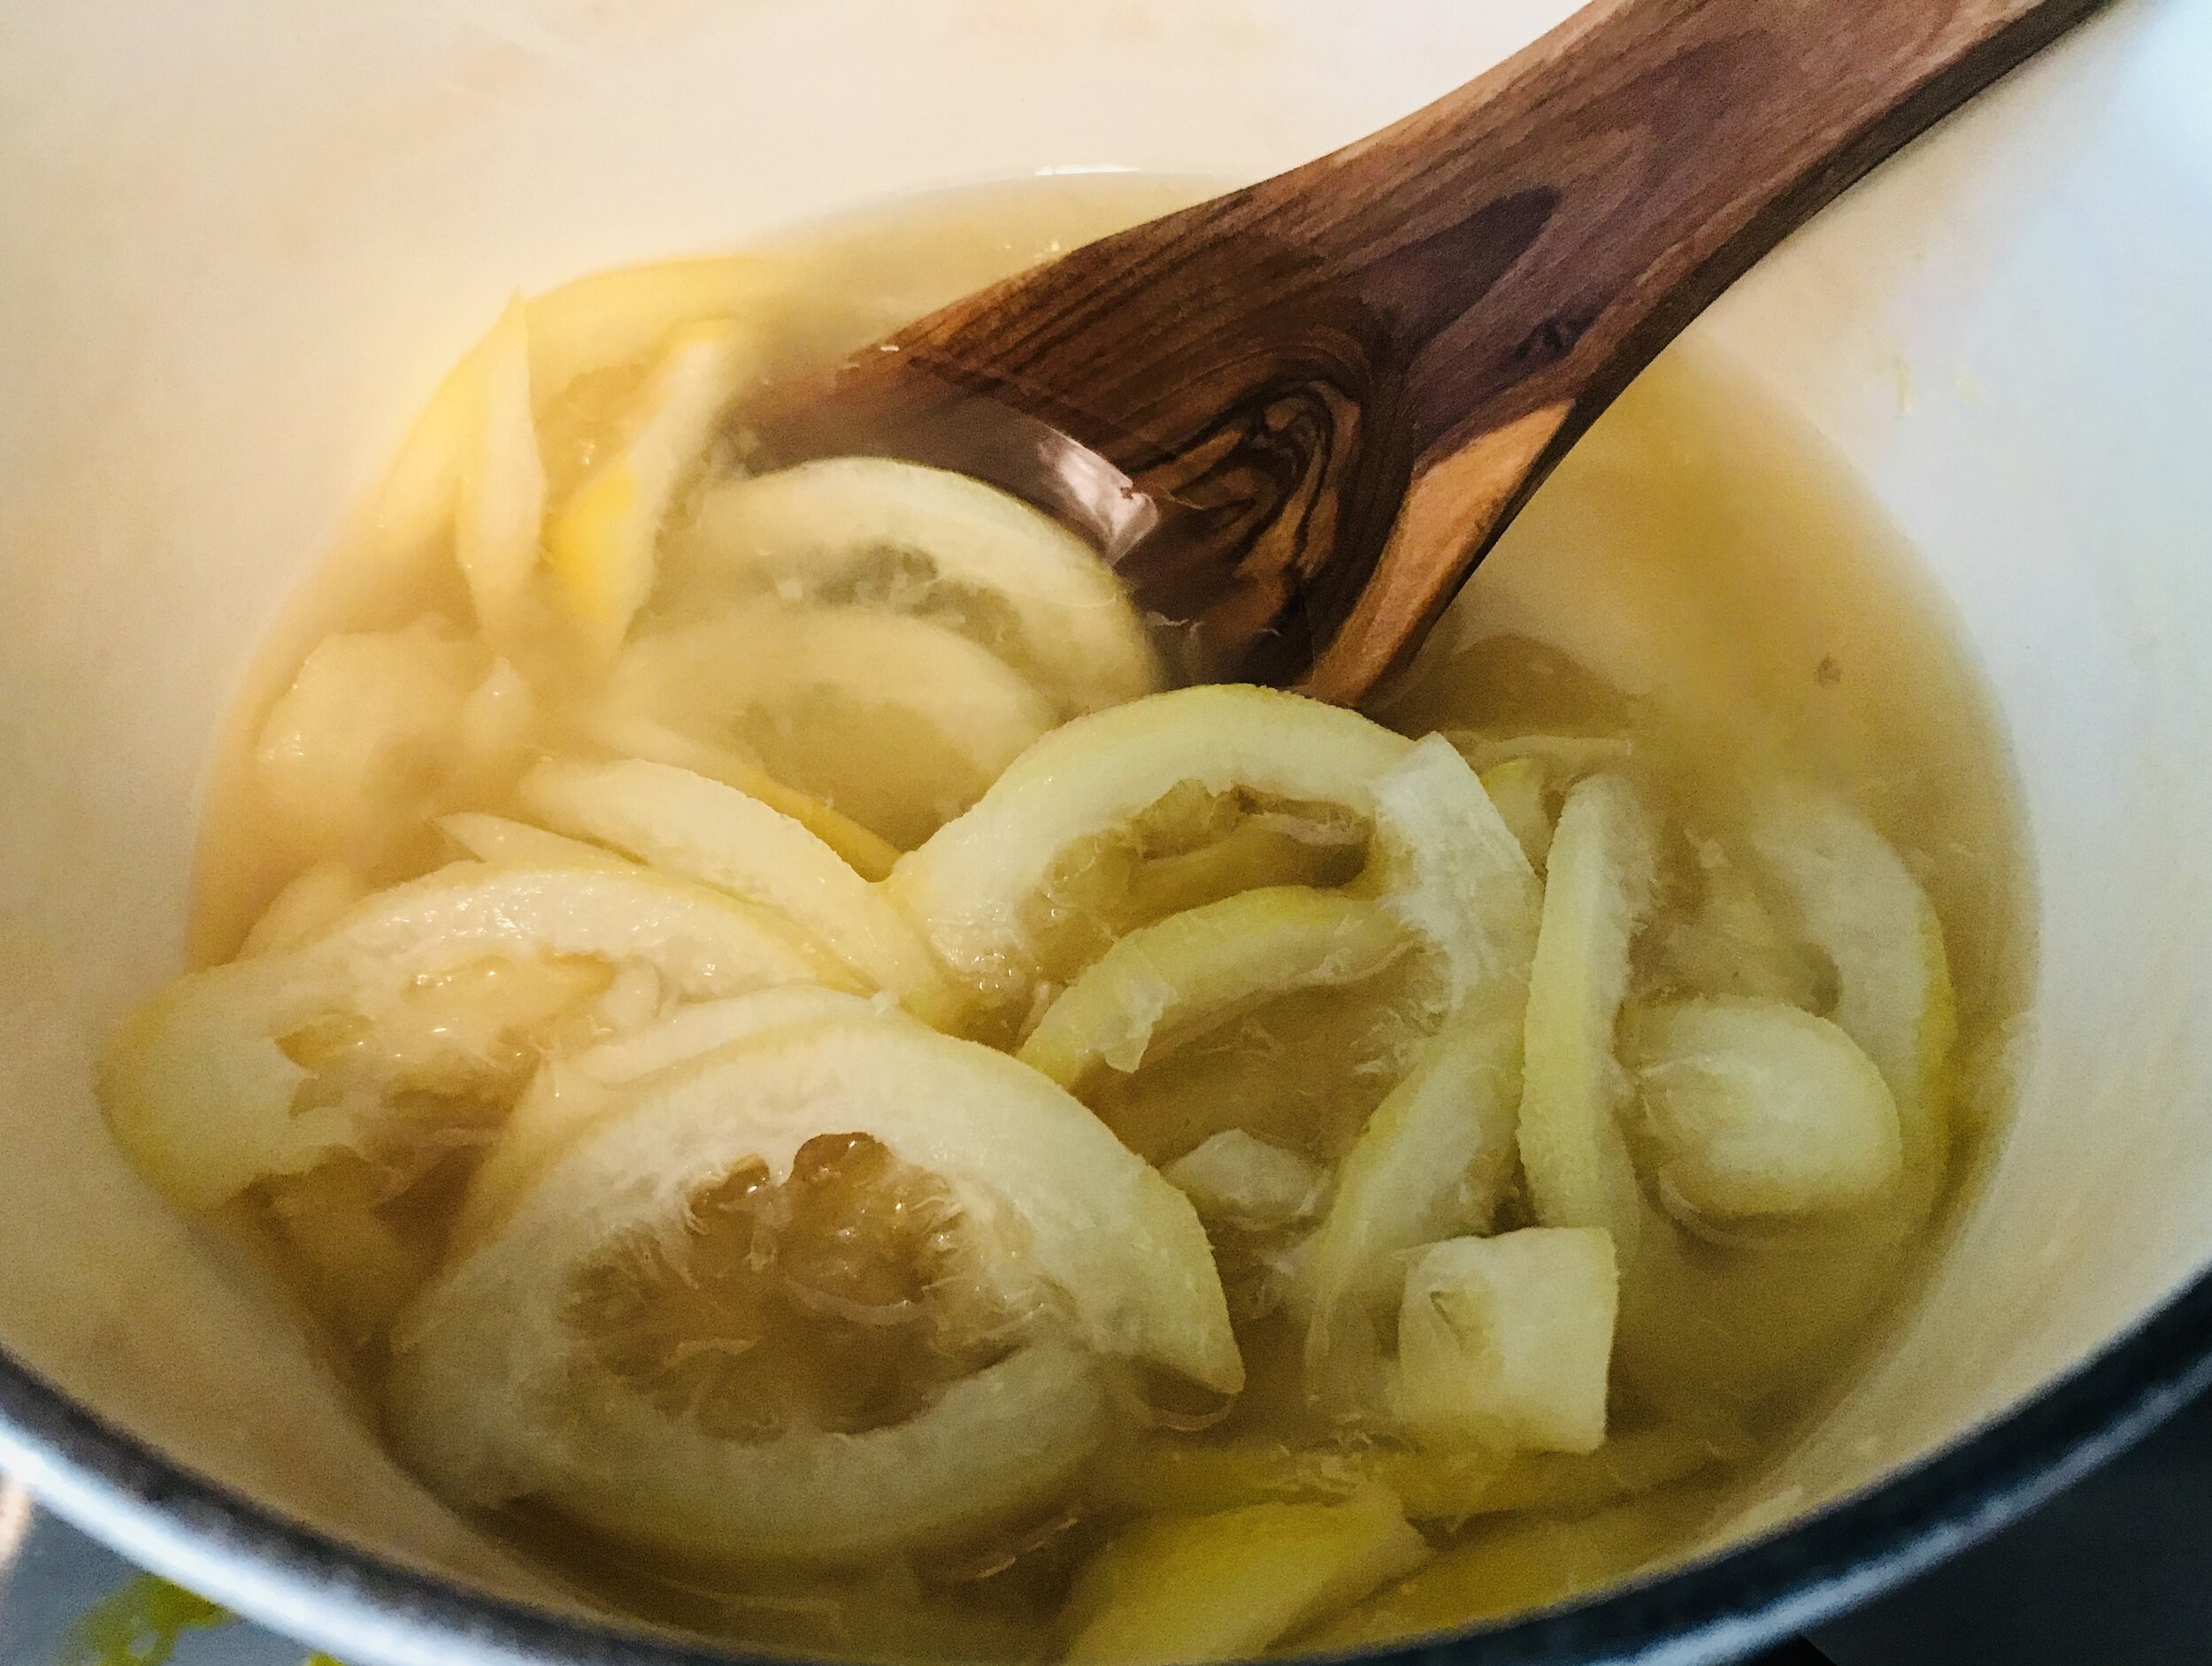  Lemon rinds, taking a hot bath in sugar water. 